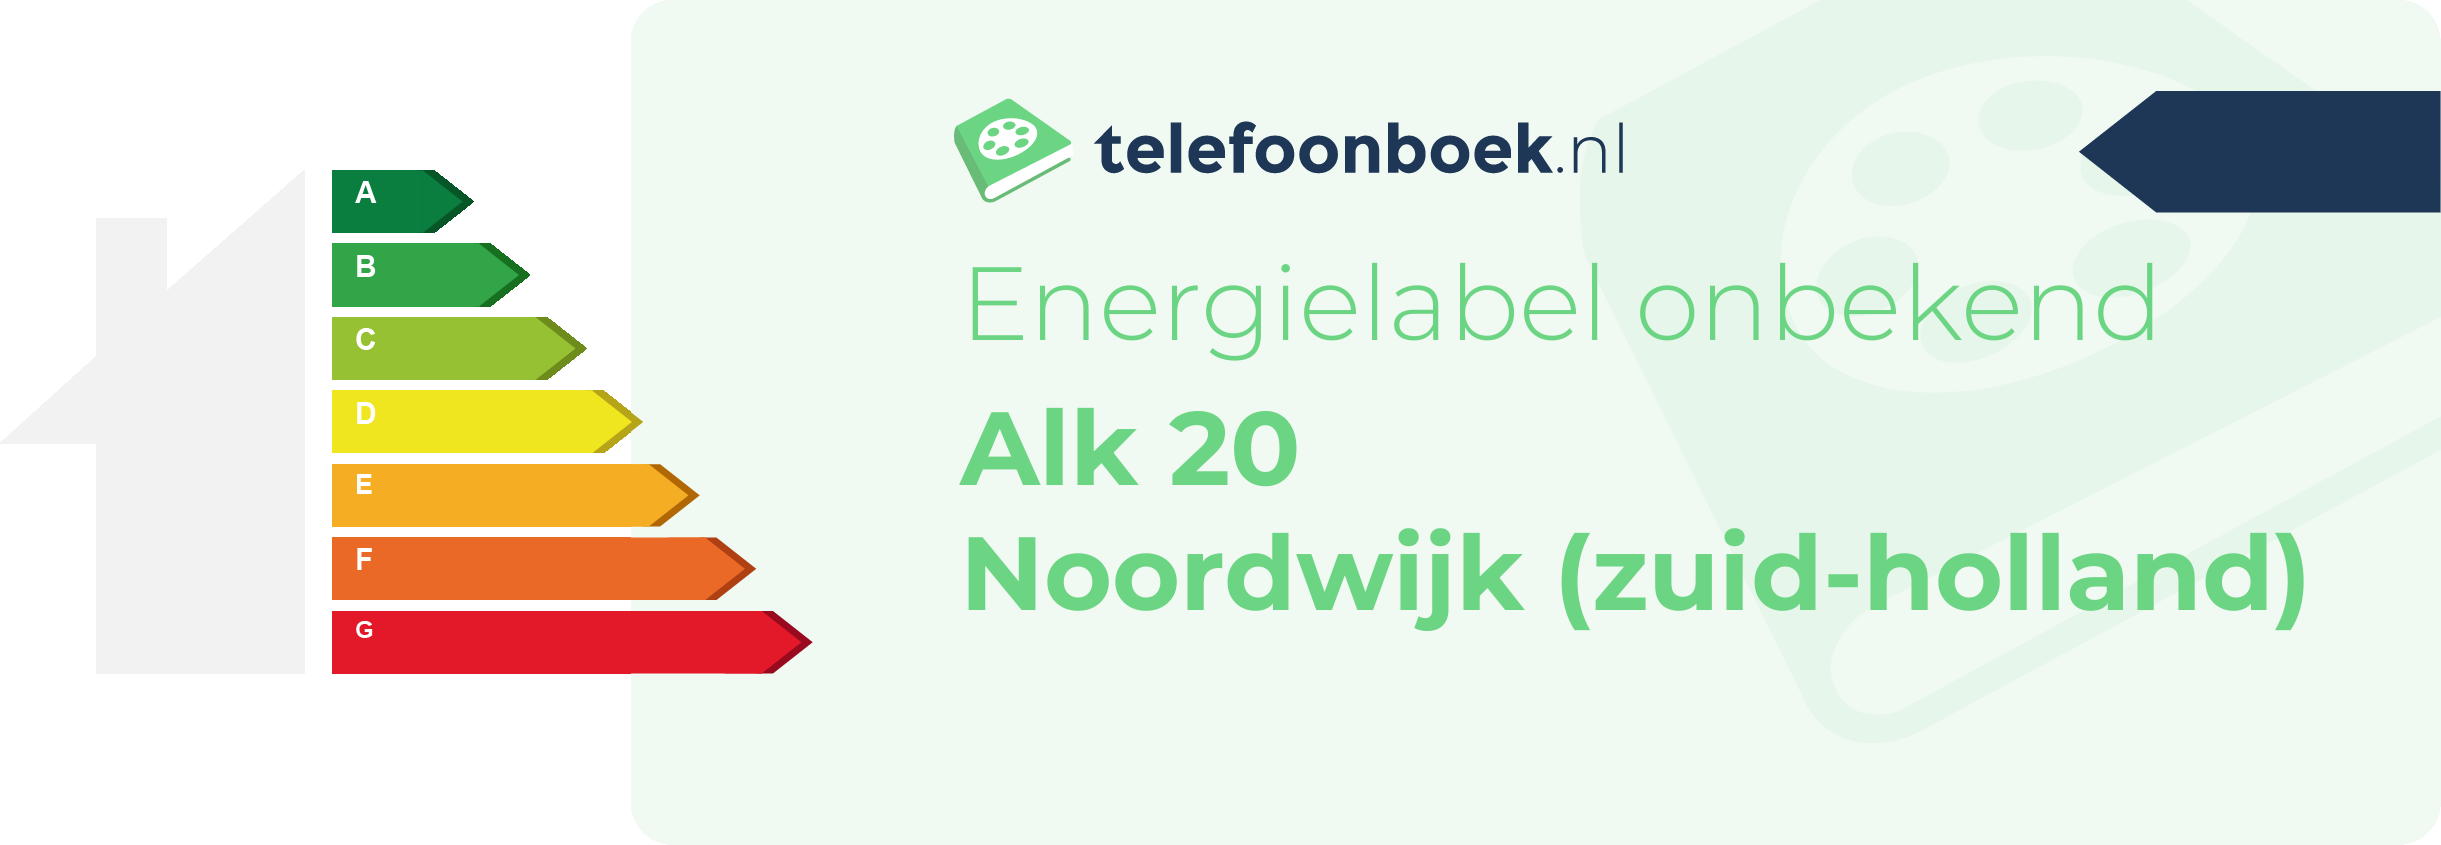 Energielabel Alk 20 Noordwijk (Zuid-Holland)